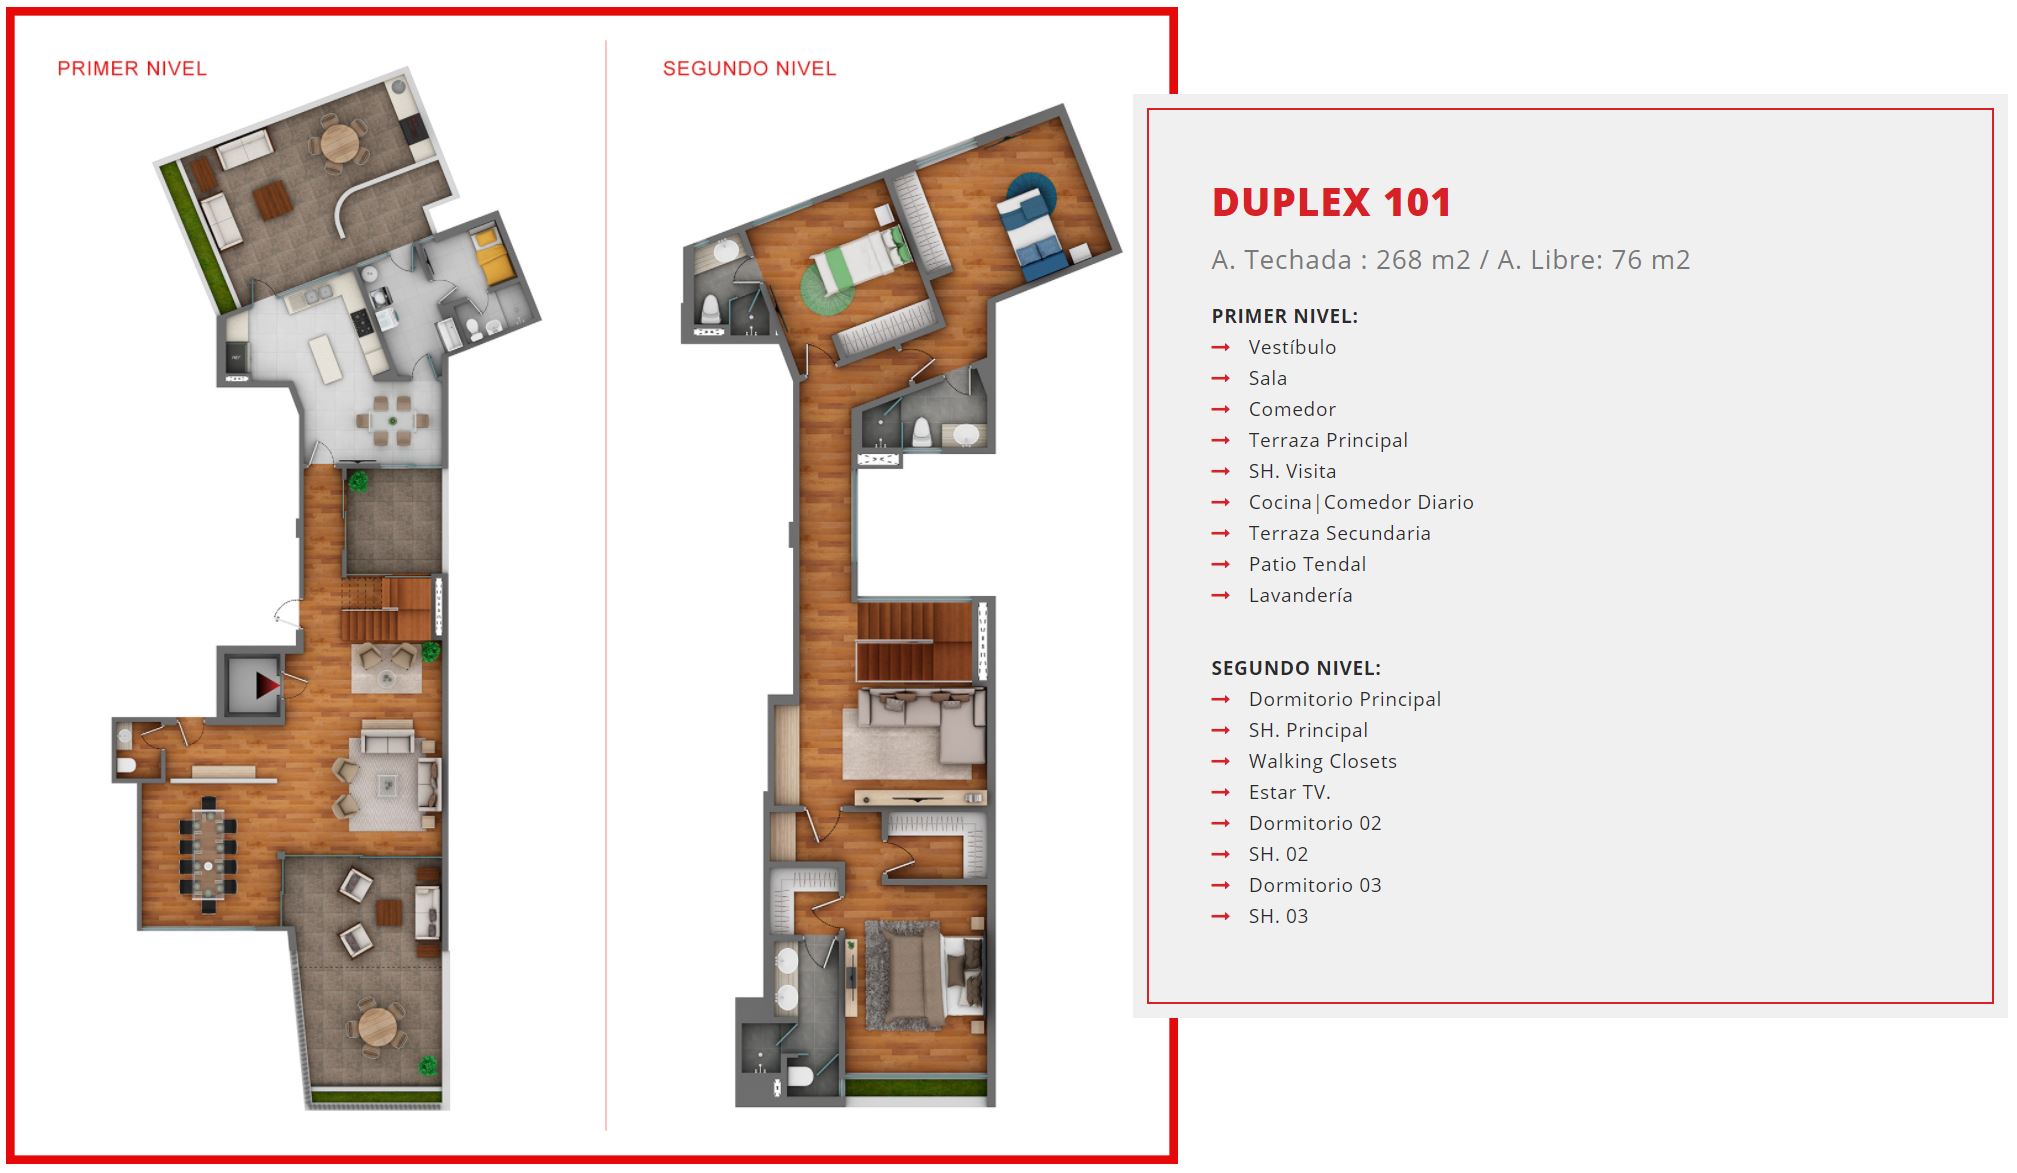 duplex 101